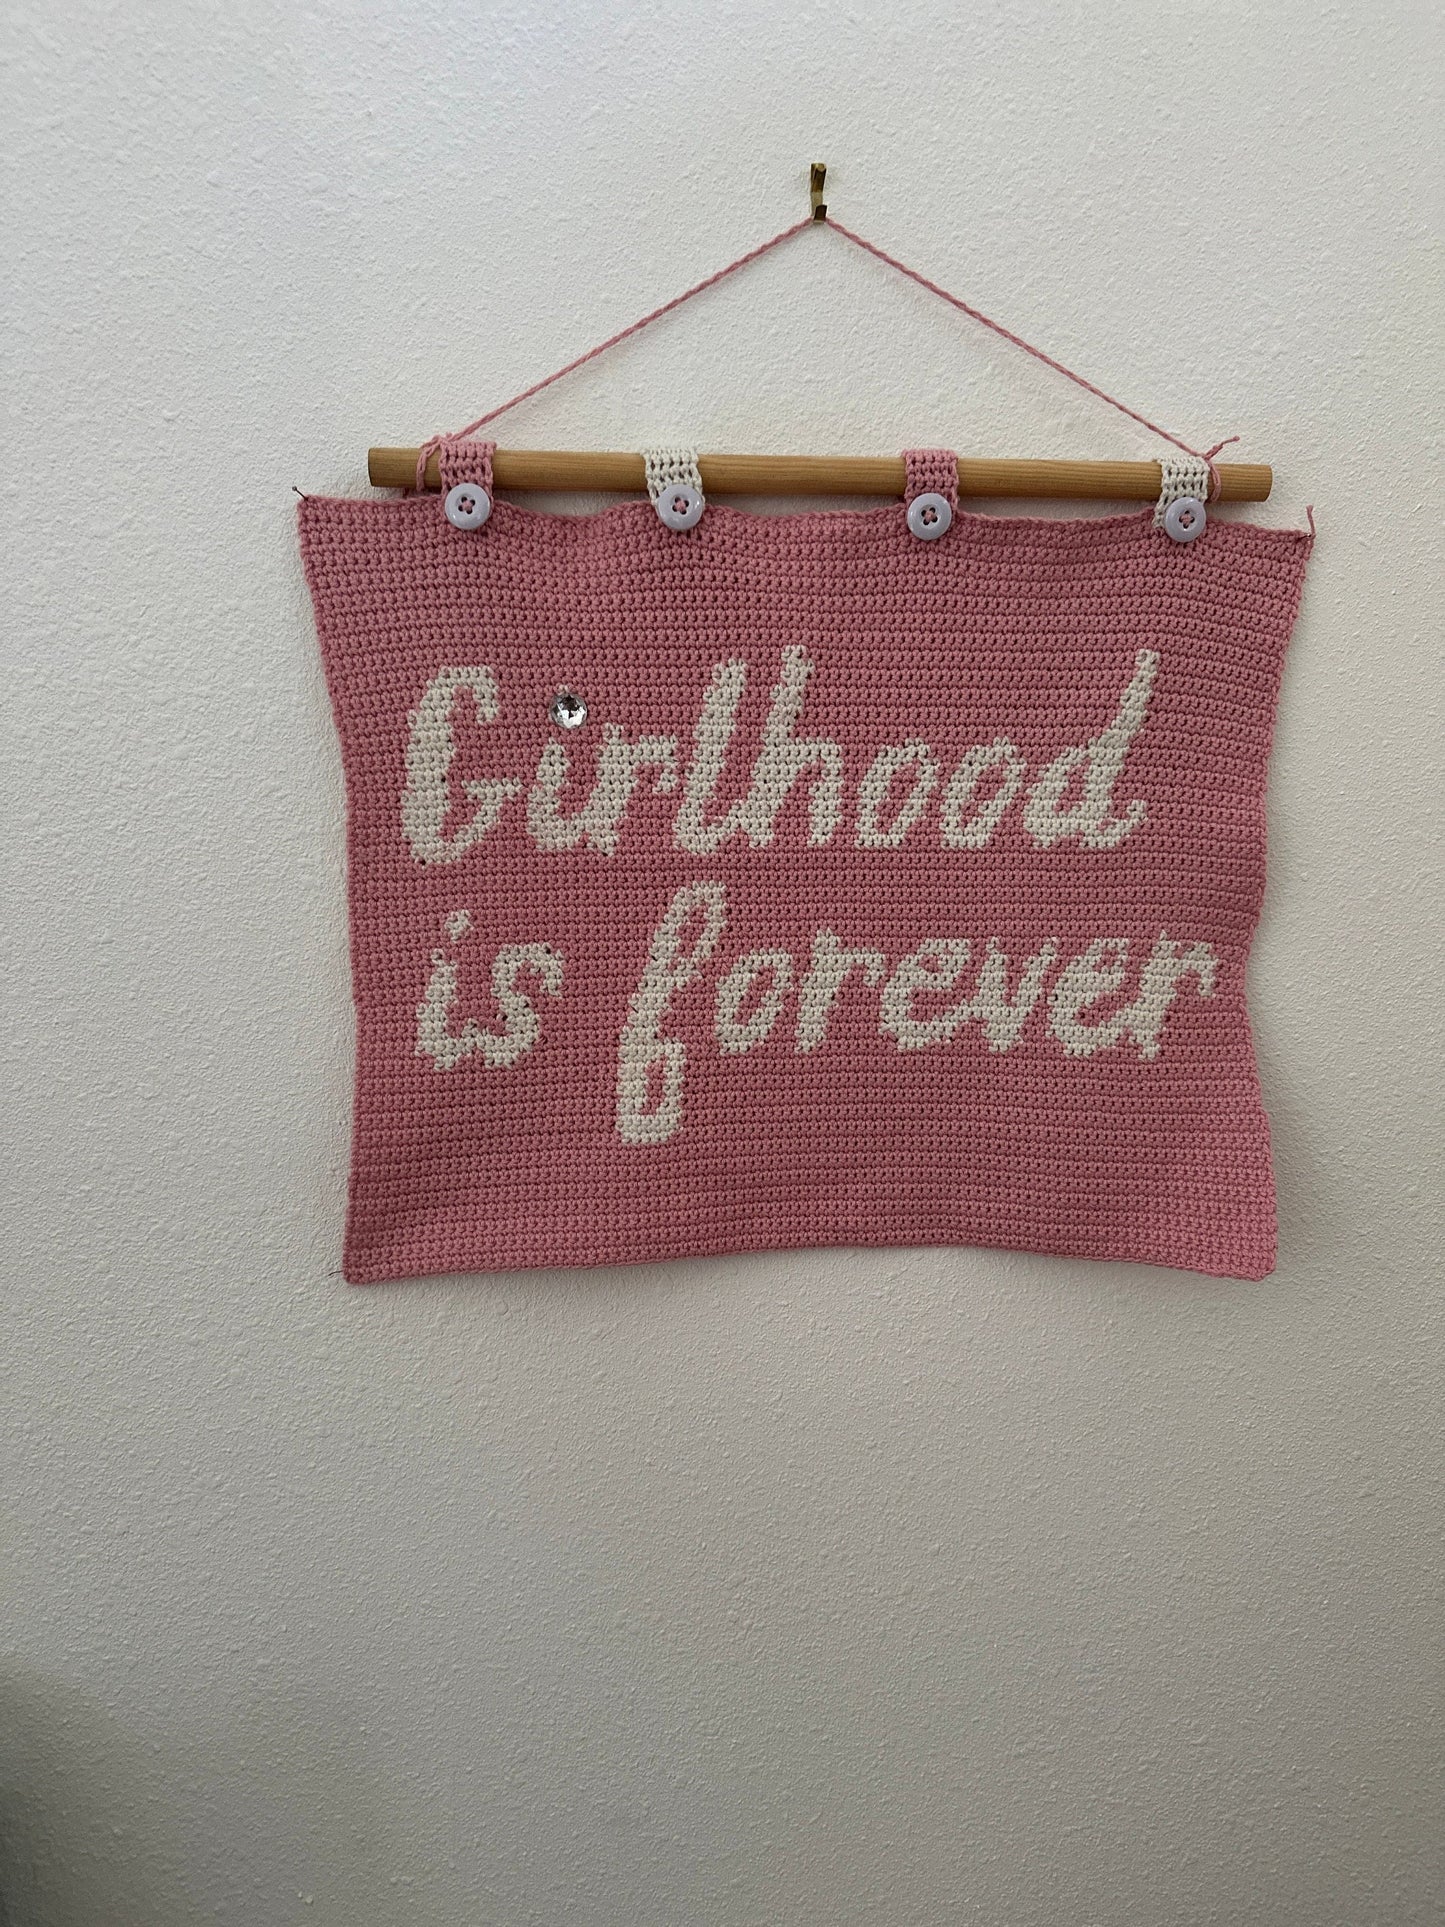 CROCHET PATTERN- Girlhood Is Forever Crochet Wall Tapestry